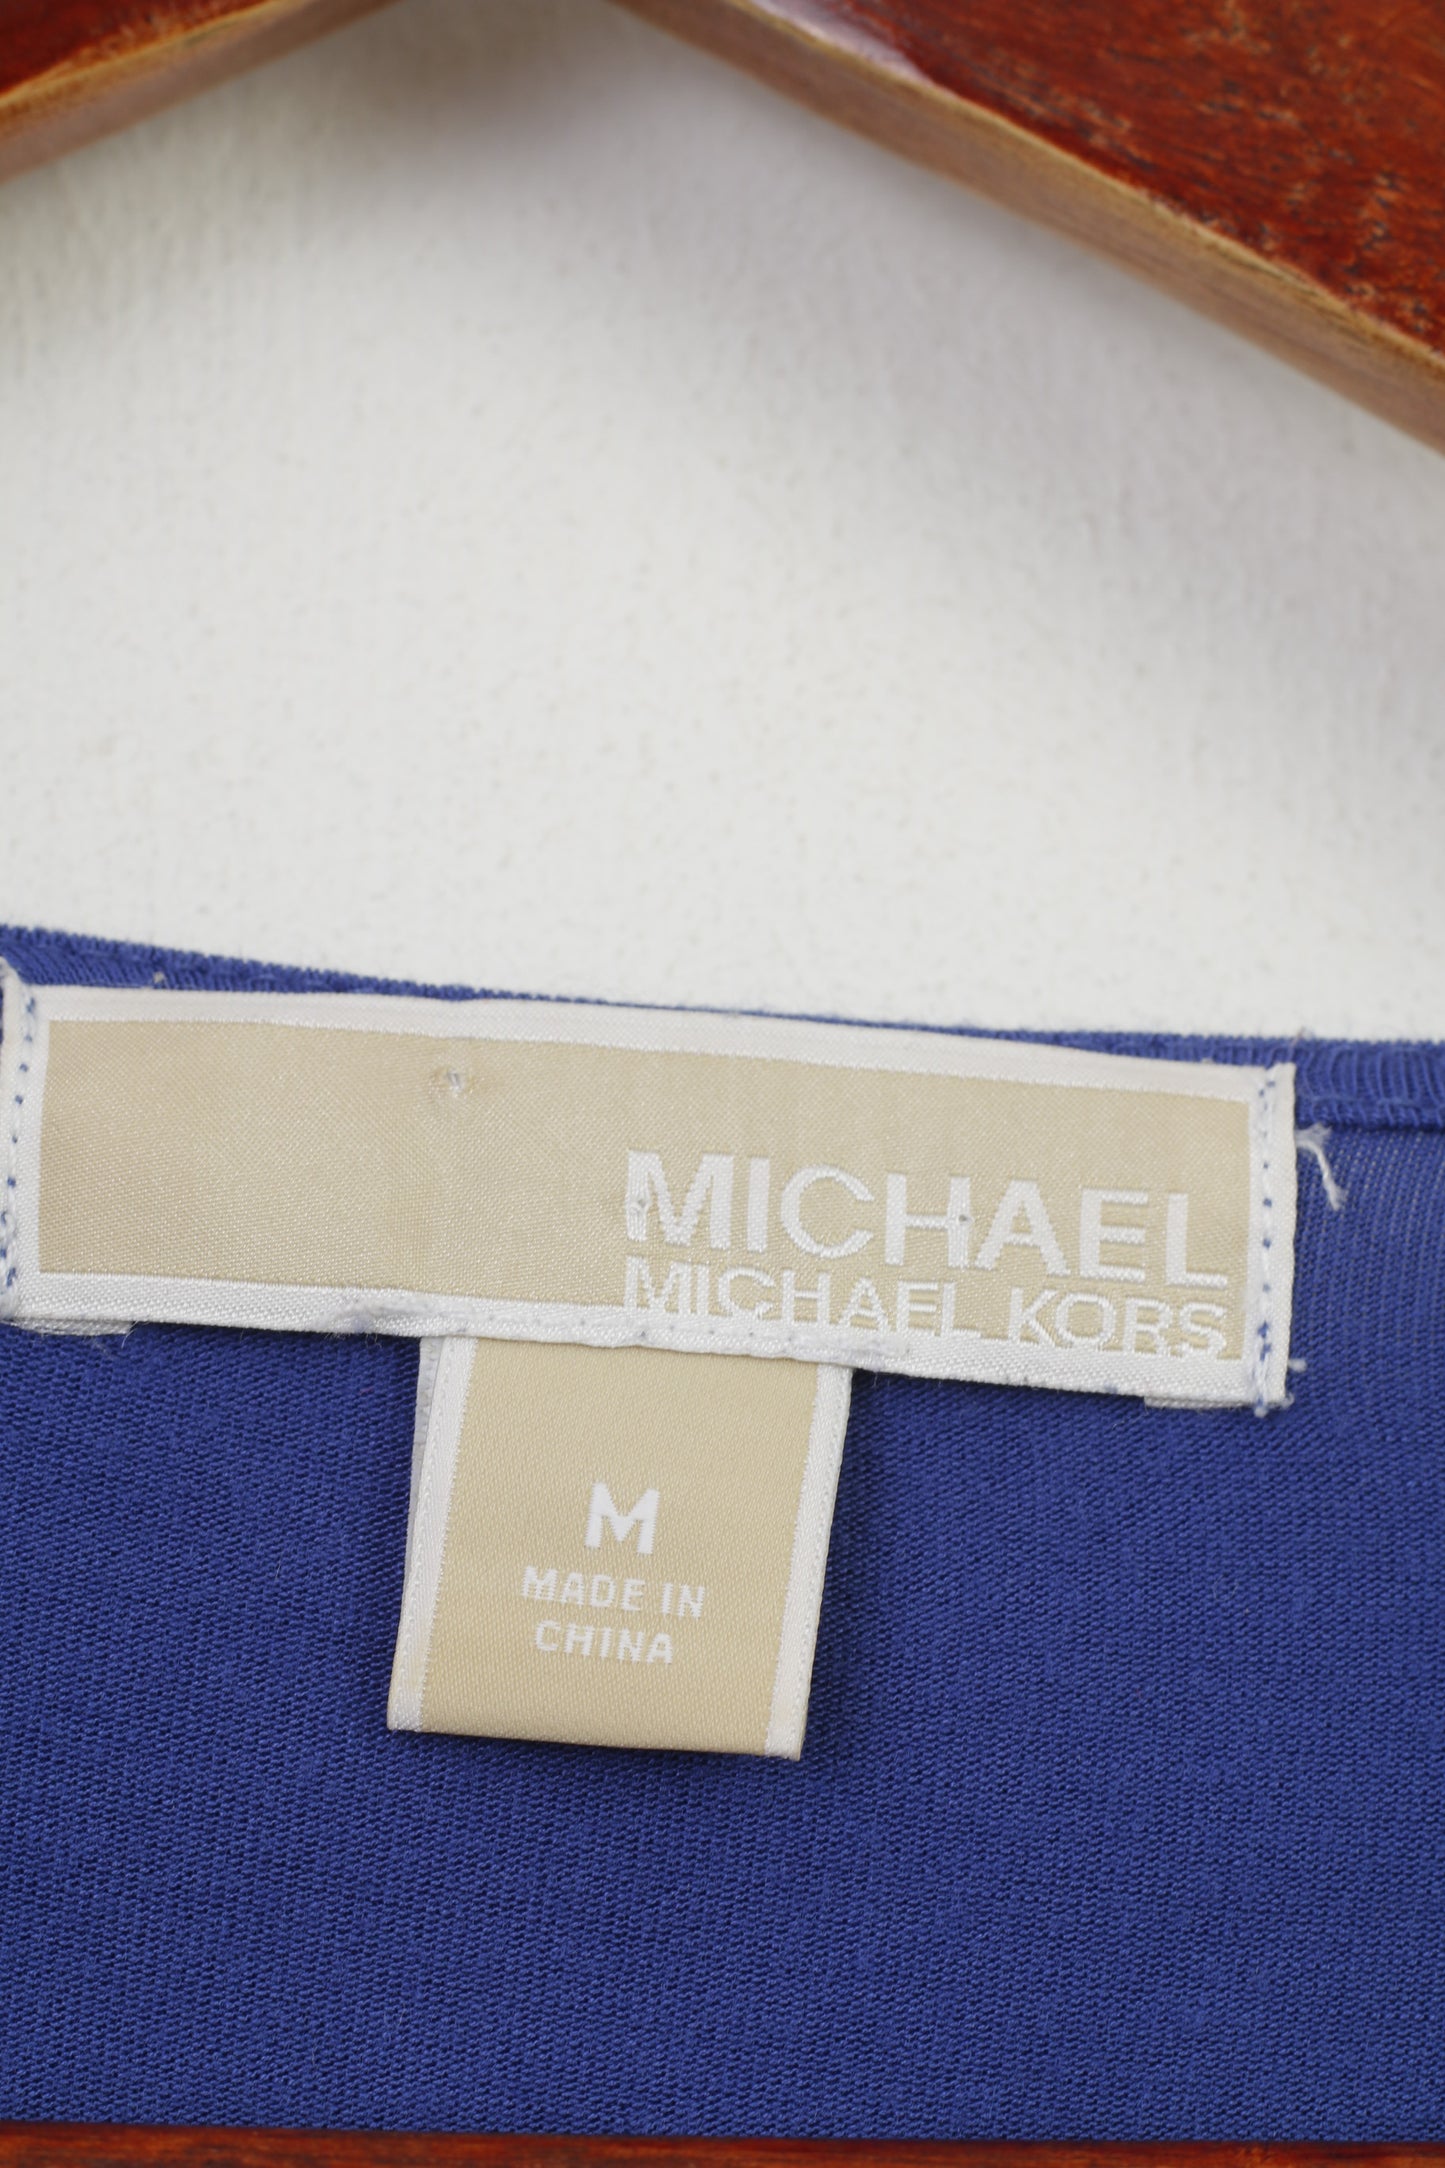 Michael Kors Donna M Camicia Senza Maniche Blu Navy Pieghe Vintage Top